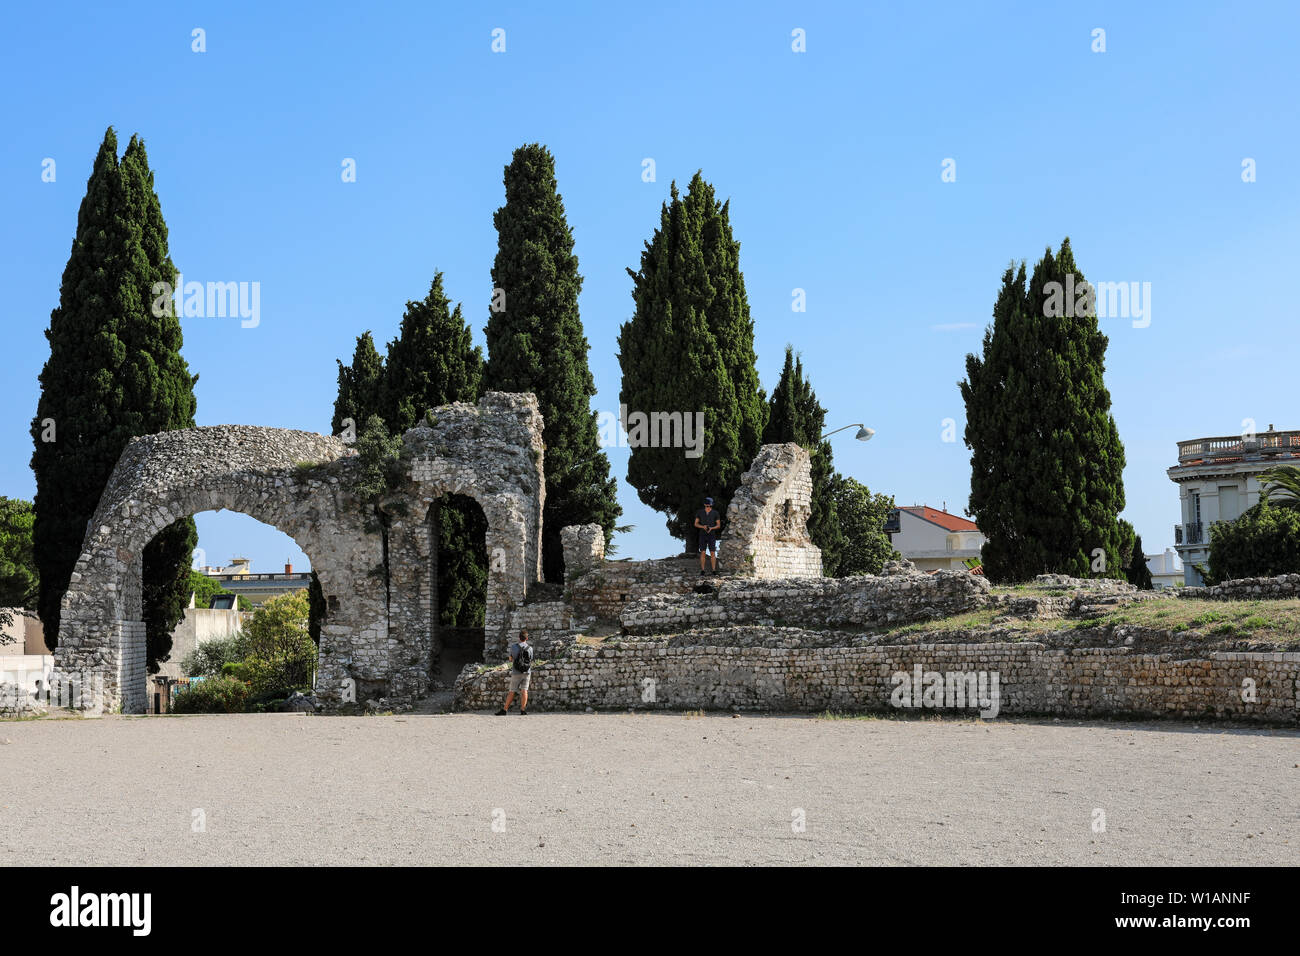 Ruinen von cemenelum, der Hauptstadt der römischen Provinz Alpes Maritimae an der ligurischen Küste, in Nizza, Frankreich. Stockfoto